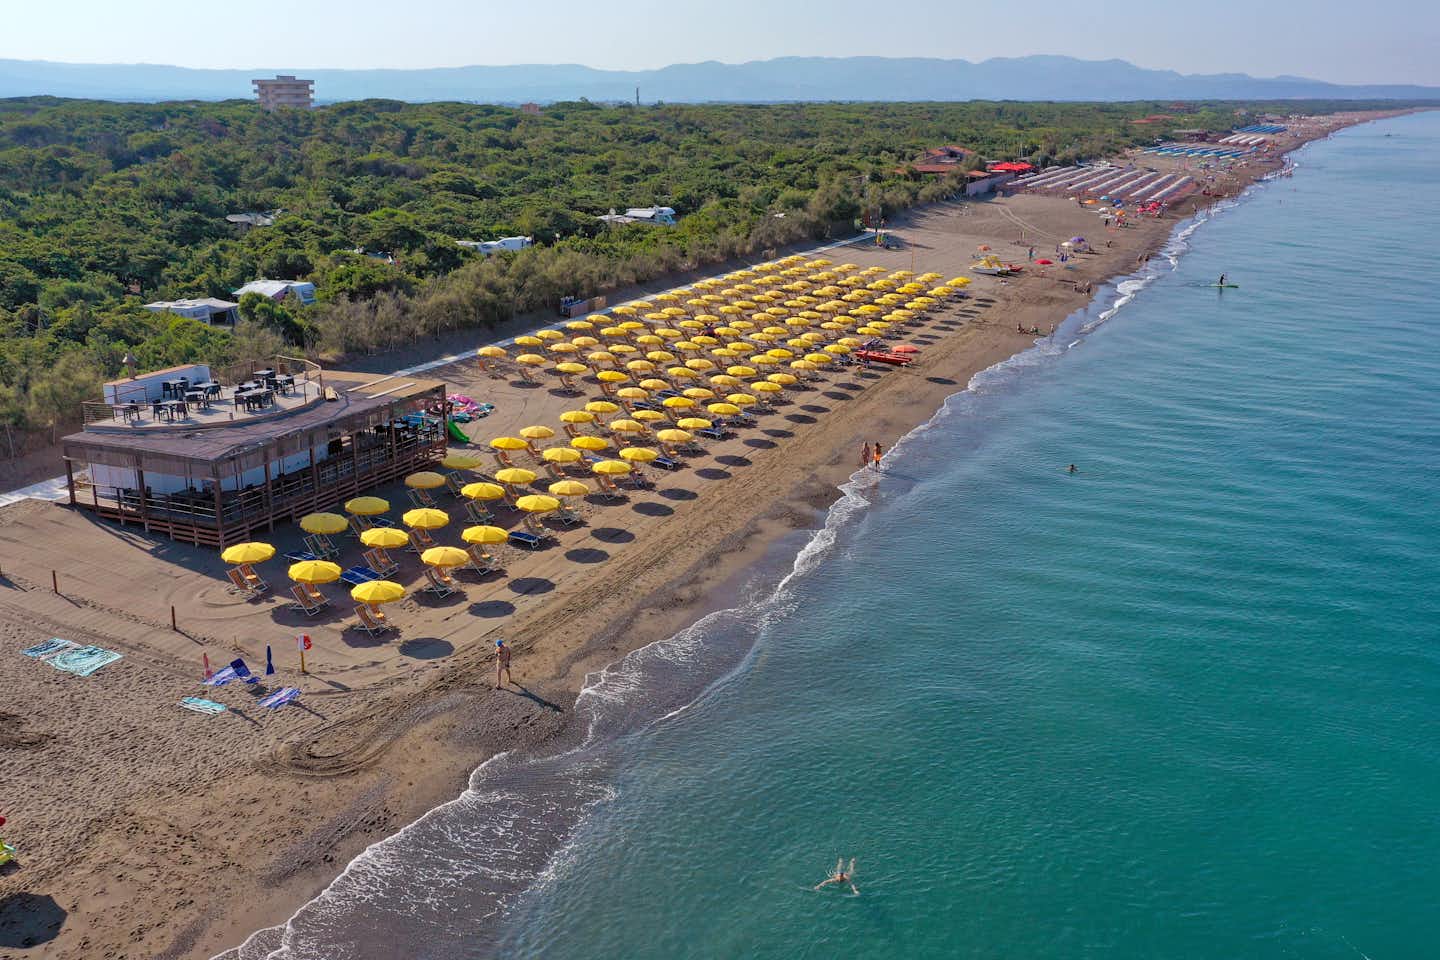 Camping Village Casa di Caccia - Vogelperspektive auf den Strand mit Liegestühlen, Sonnenschirmen und Strandbar und teilweise erkennbare Standplätze zwischen den Bäumen